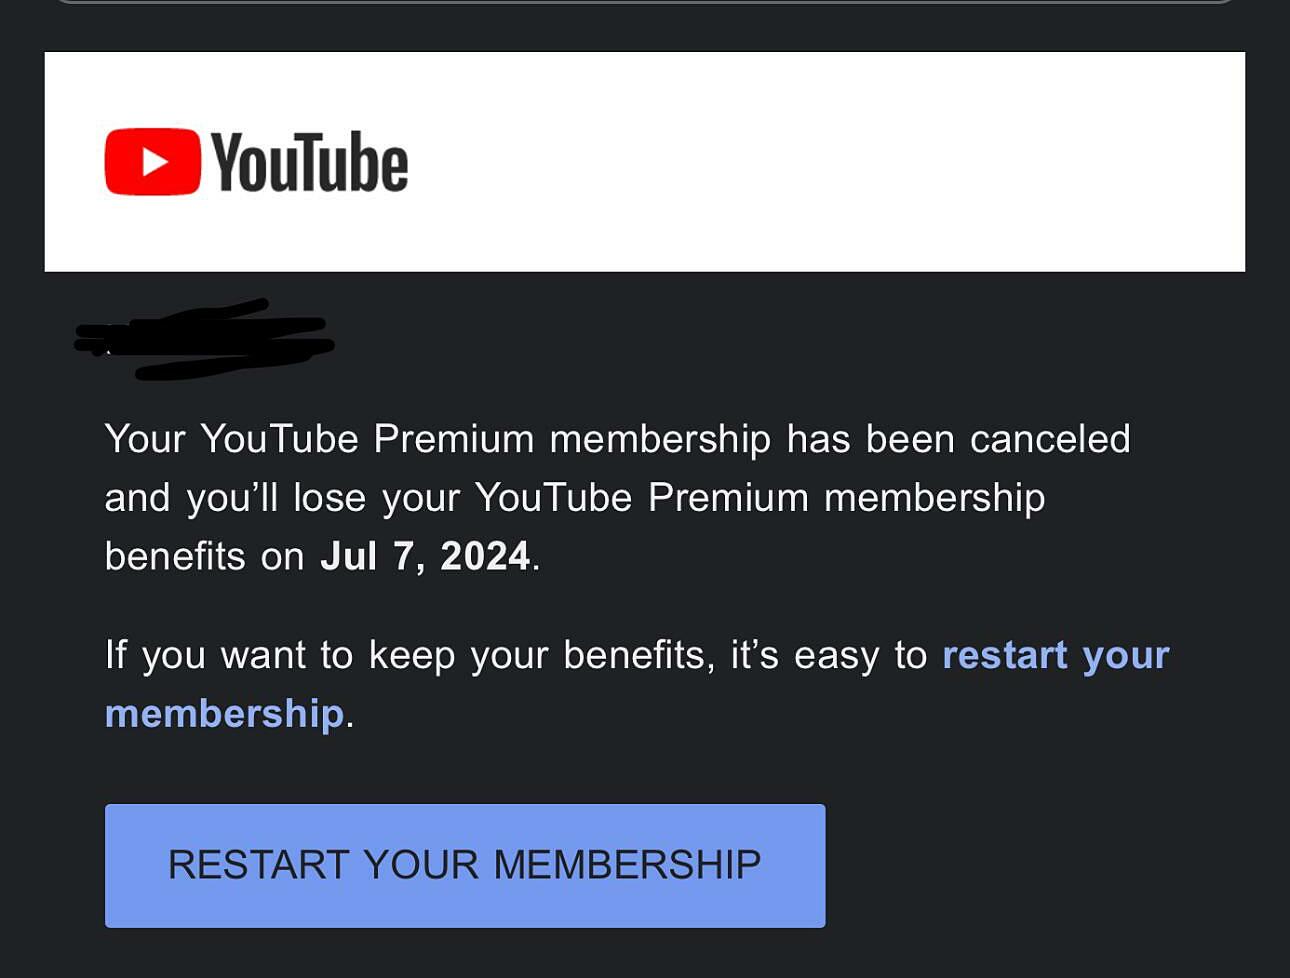 Email của YouTube thông báo hủy gói đăng ký của người dùng. Ảnh: Reddit/Alopez1024